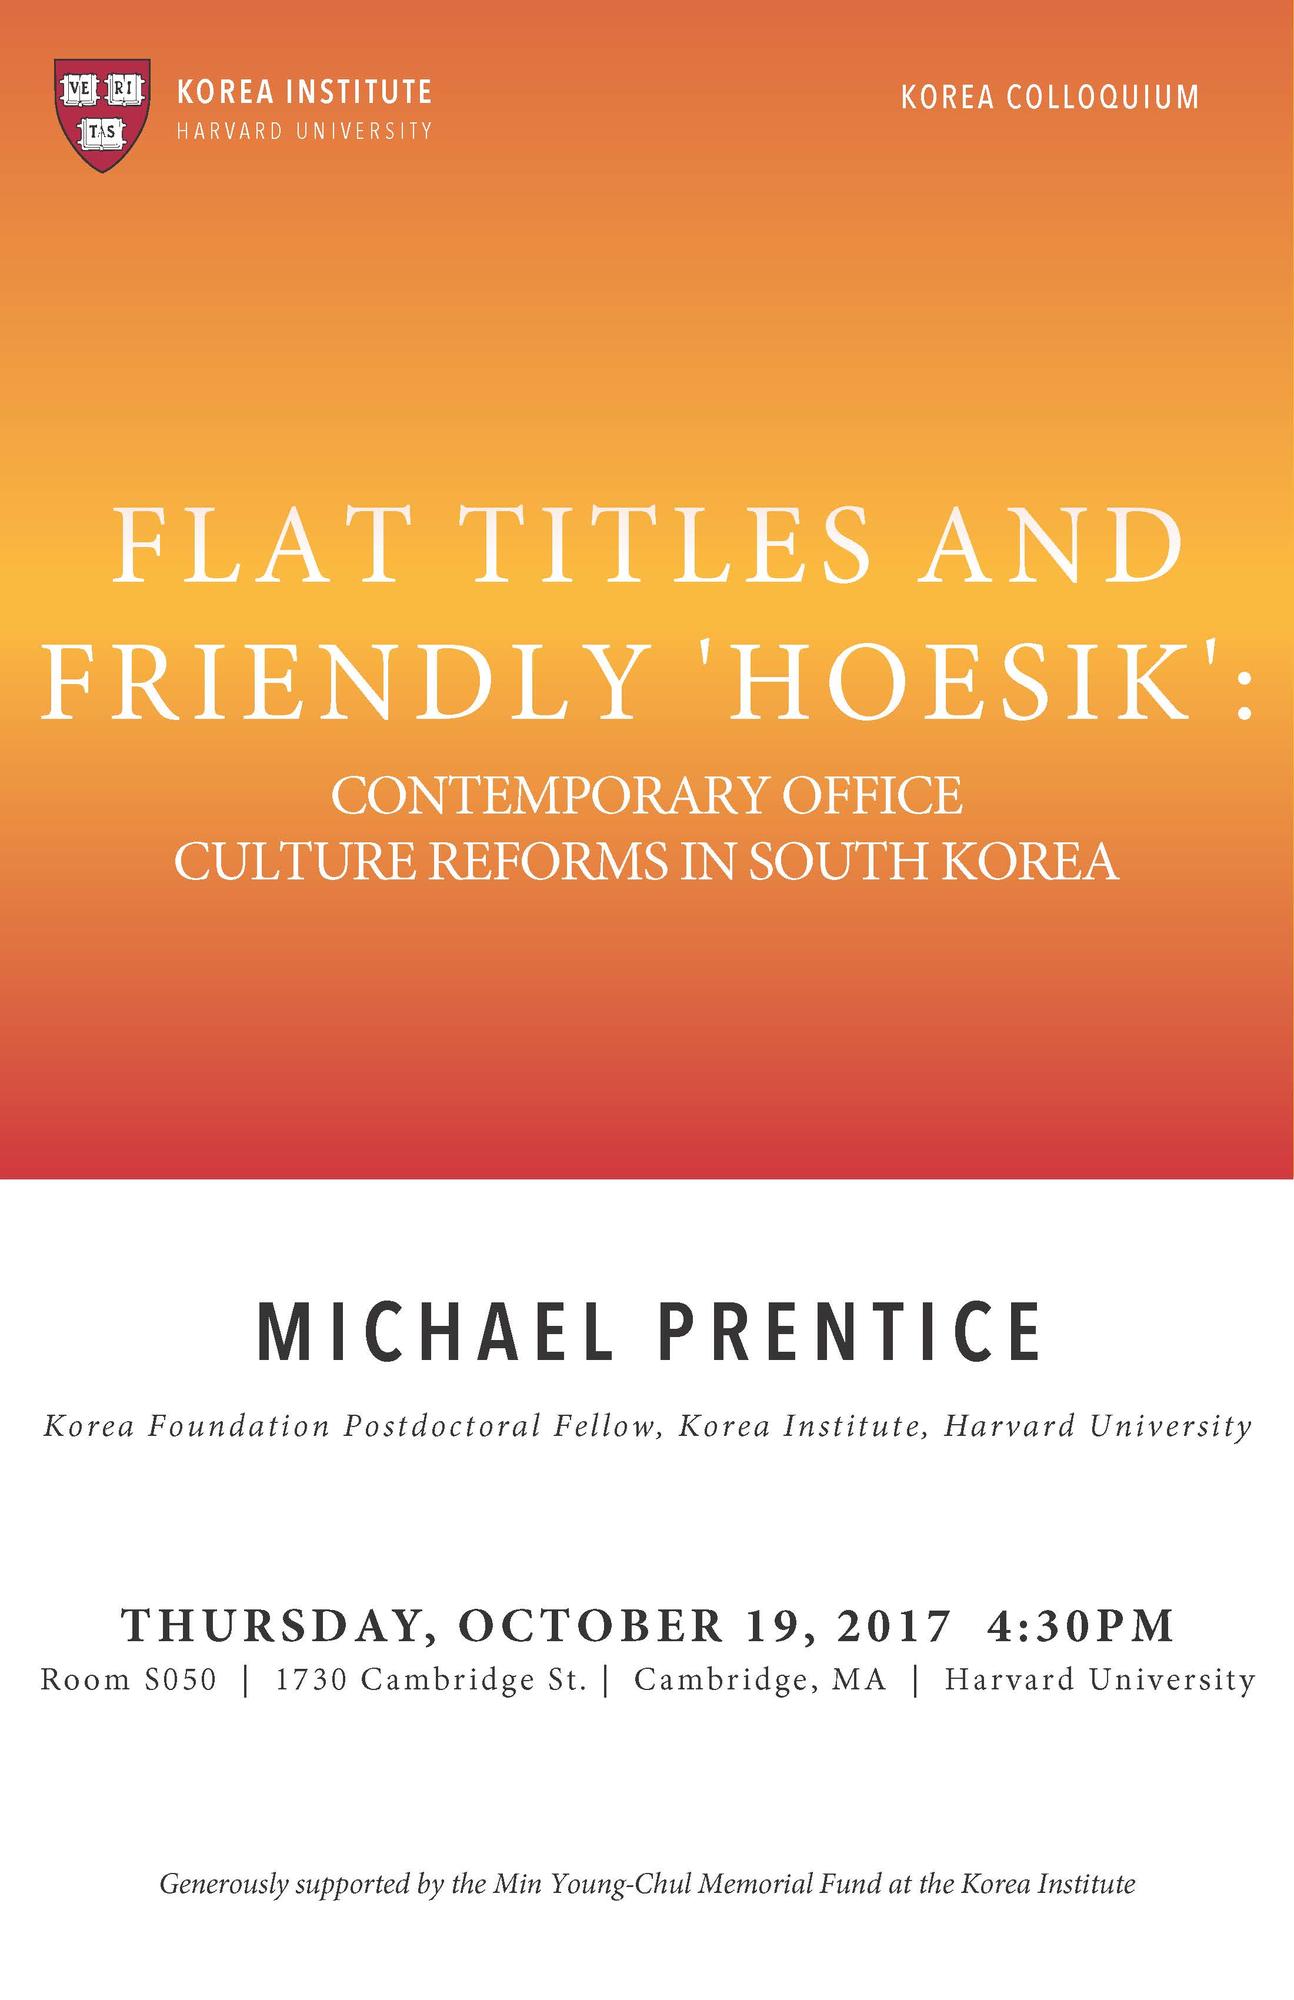 Oct.19 Korea Colloquium Poster